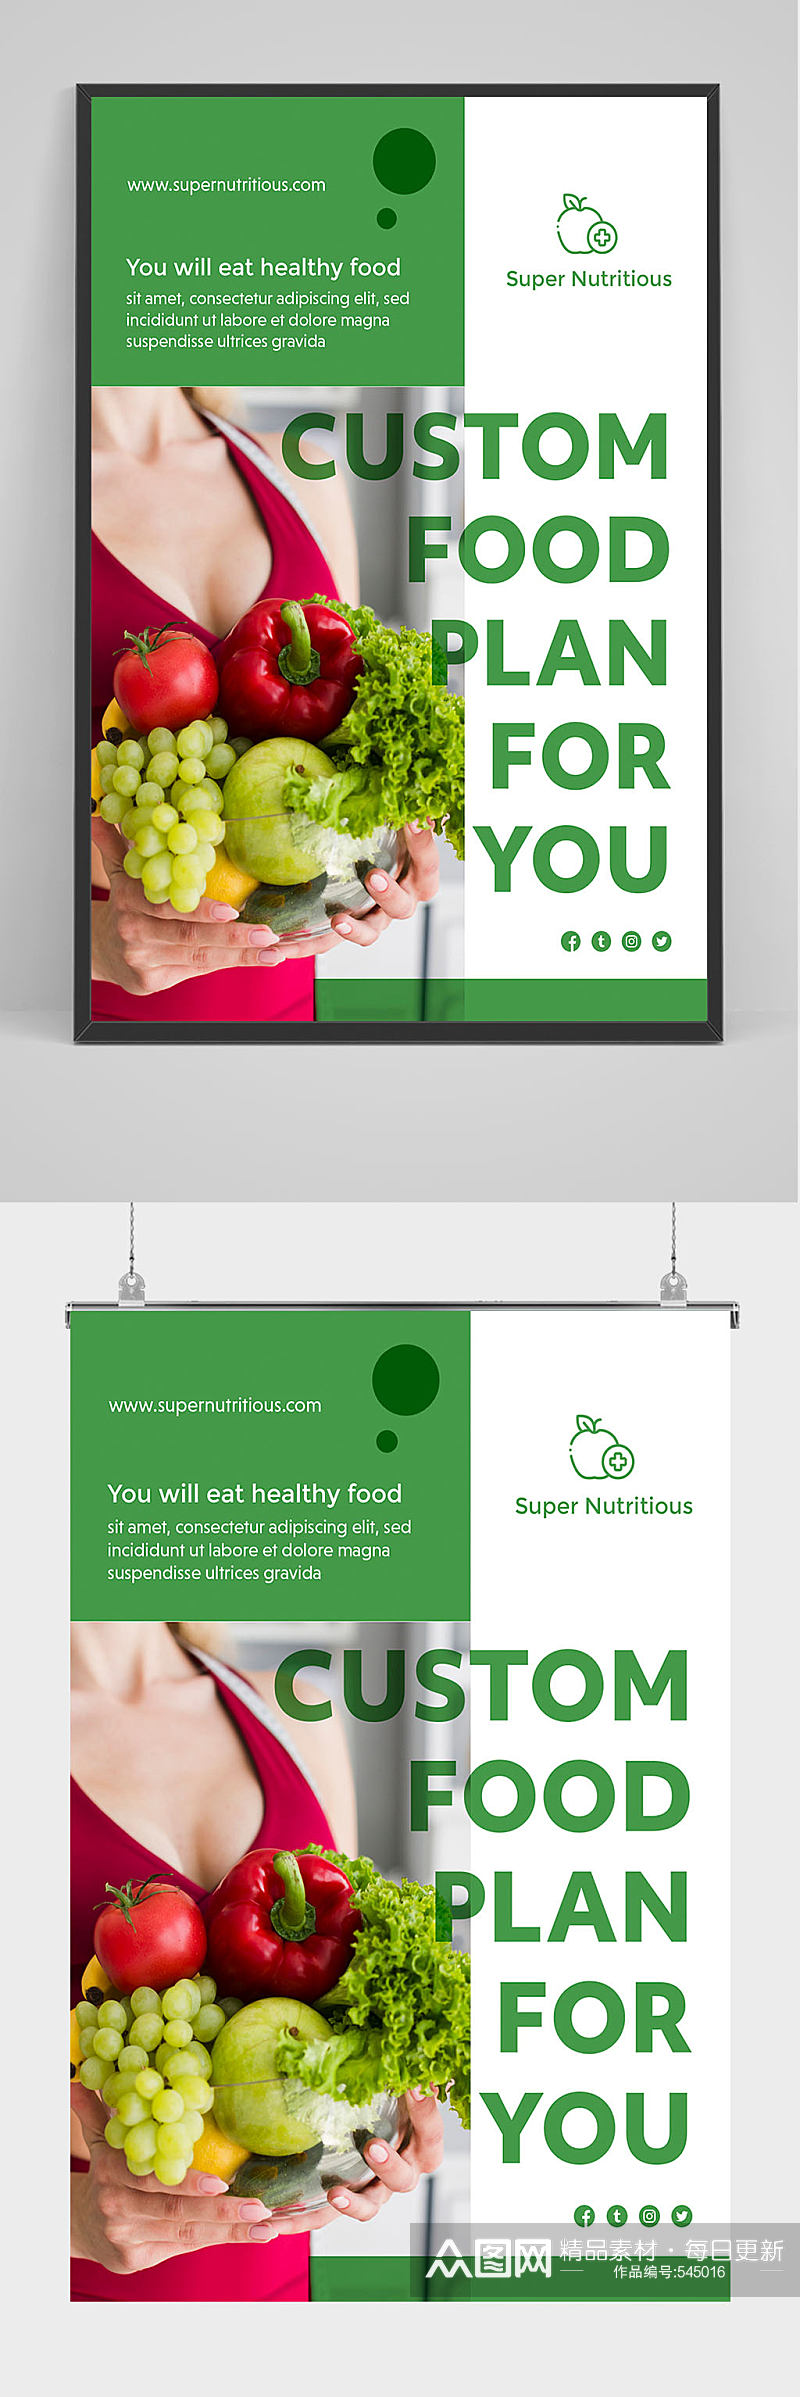 绿色新鲜果蔬海报设计素材